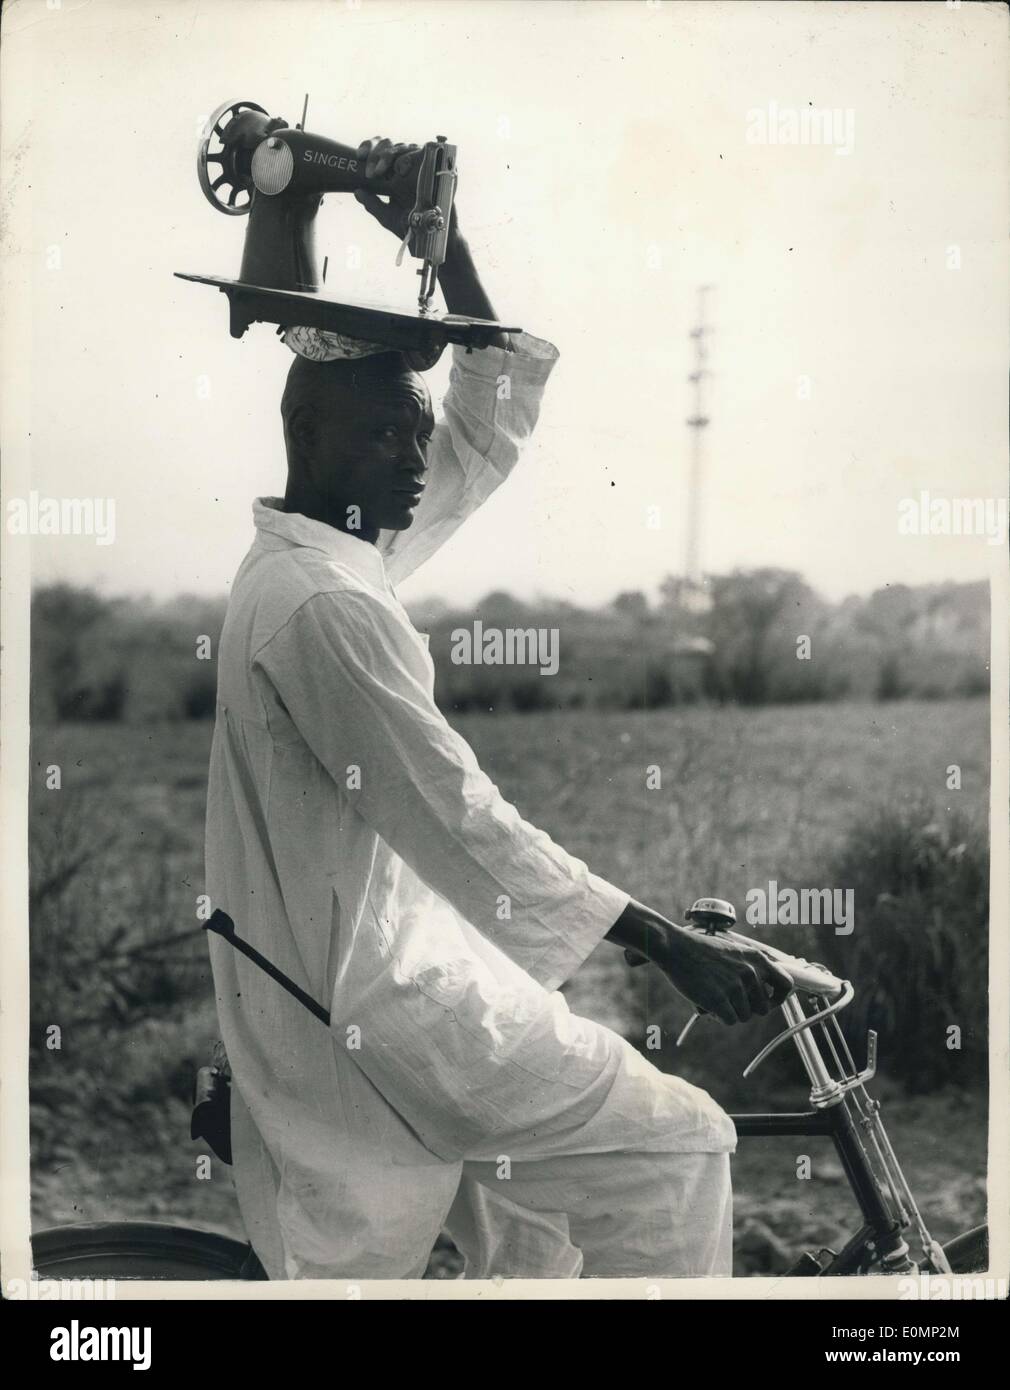 27. Januar 1956 - geht es auf dem Kopf... Schneider - In Nigeria Reisen... Dieser Mann verdient seinen Lebensunterhalt als Schneider in Nigeria - Szene von HM The Queen bevorstehenden Besuch - aber im Gegensatz zu anderen Ländern - dieser Mann geht zu seiner Kunden - und nimmt seine Nähmaschine mit... auf den Kopf. Stockfoto